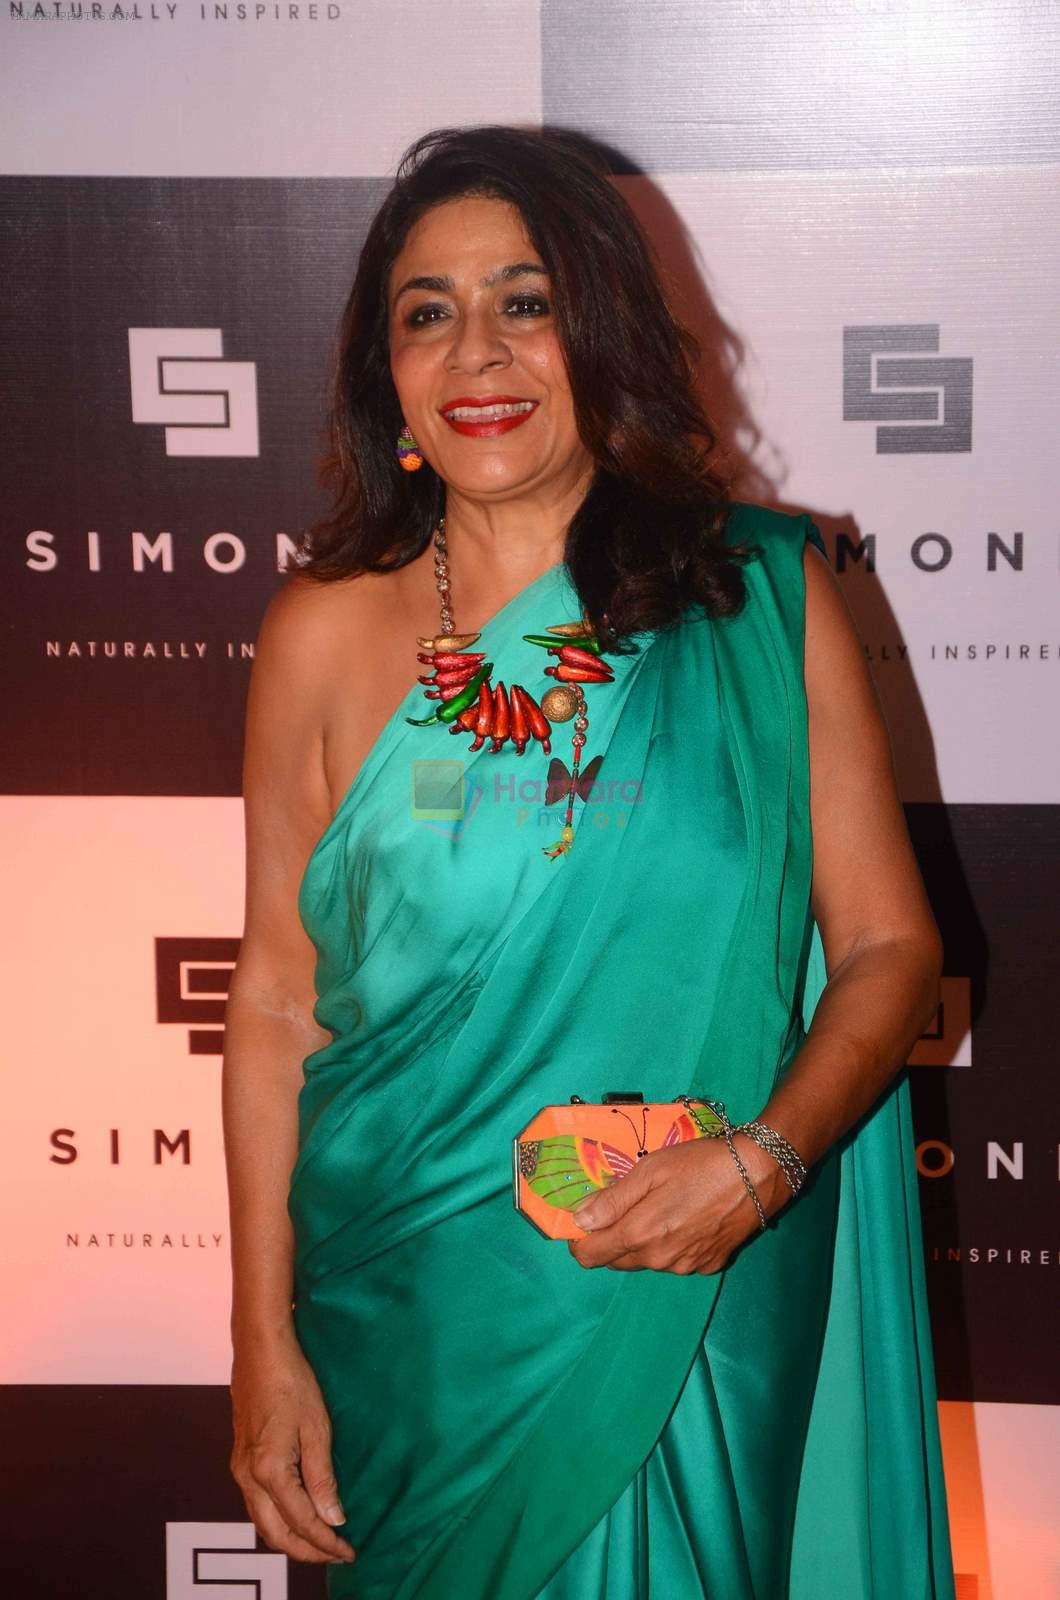 at Simone anniversary in Mumbai on 26th Sept 2015